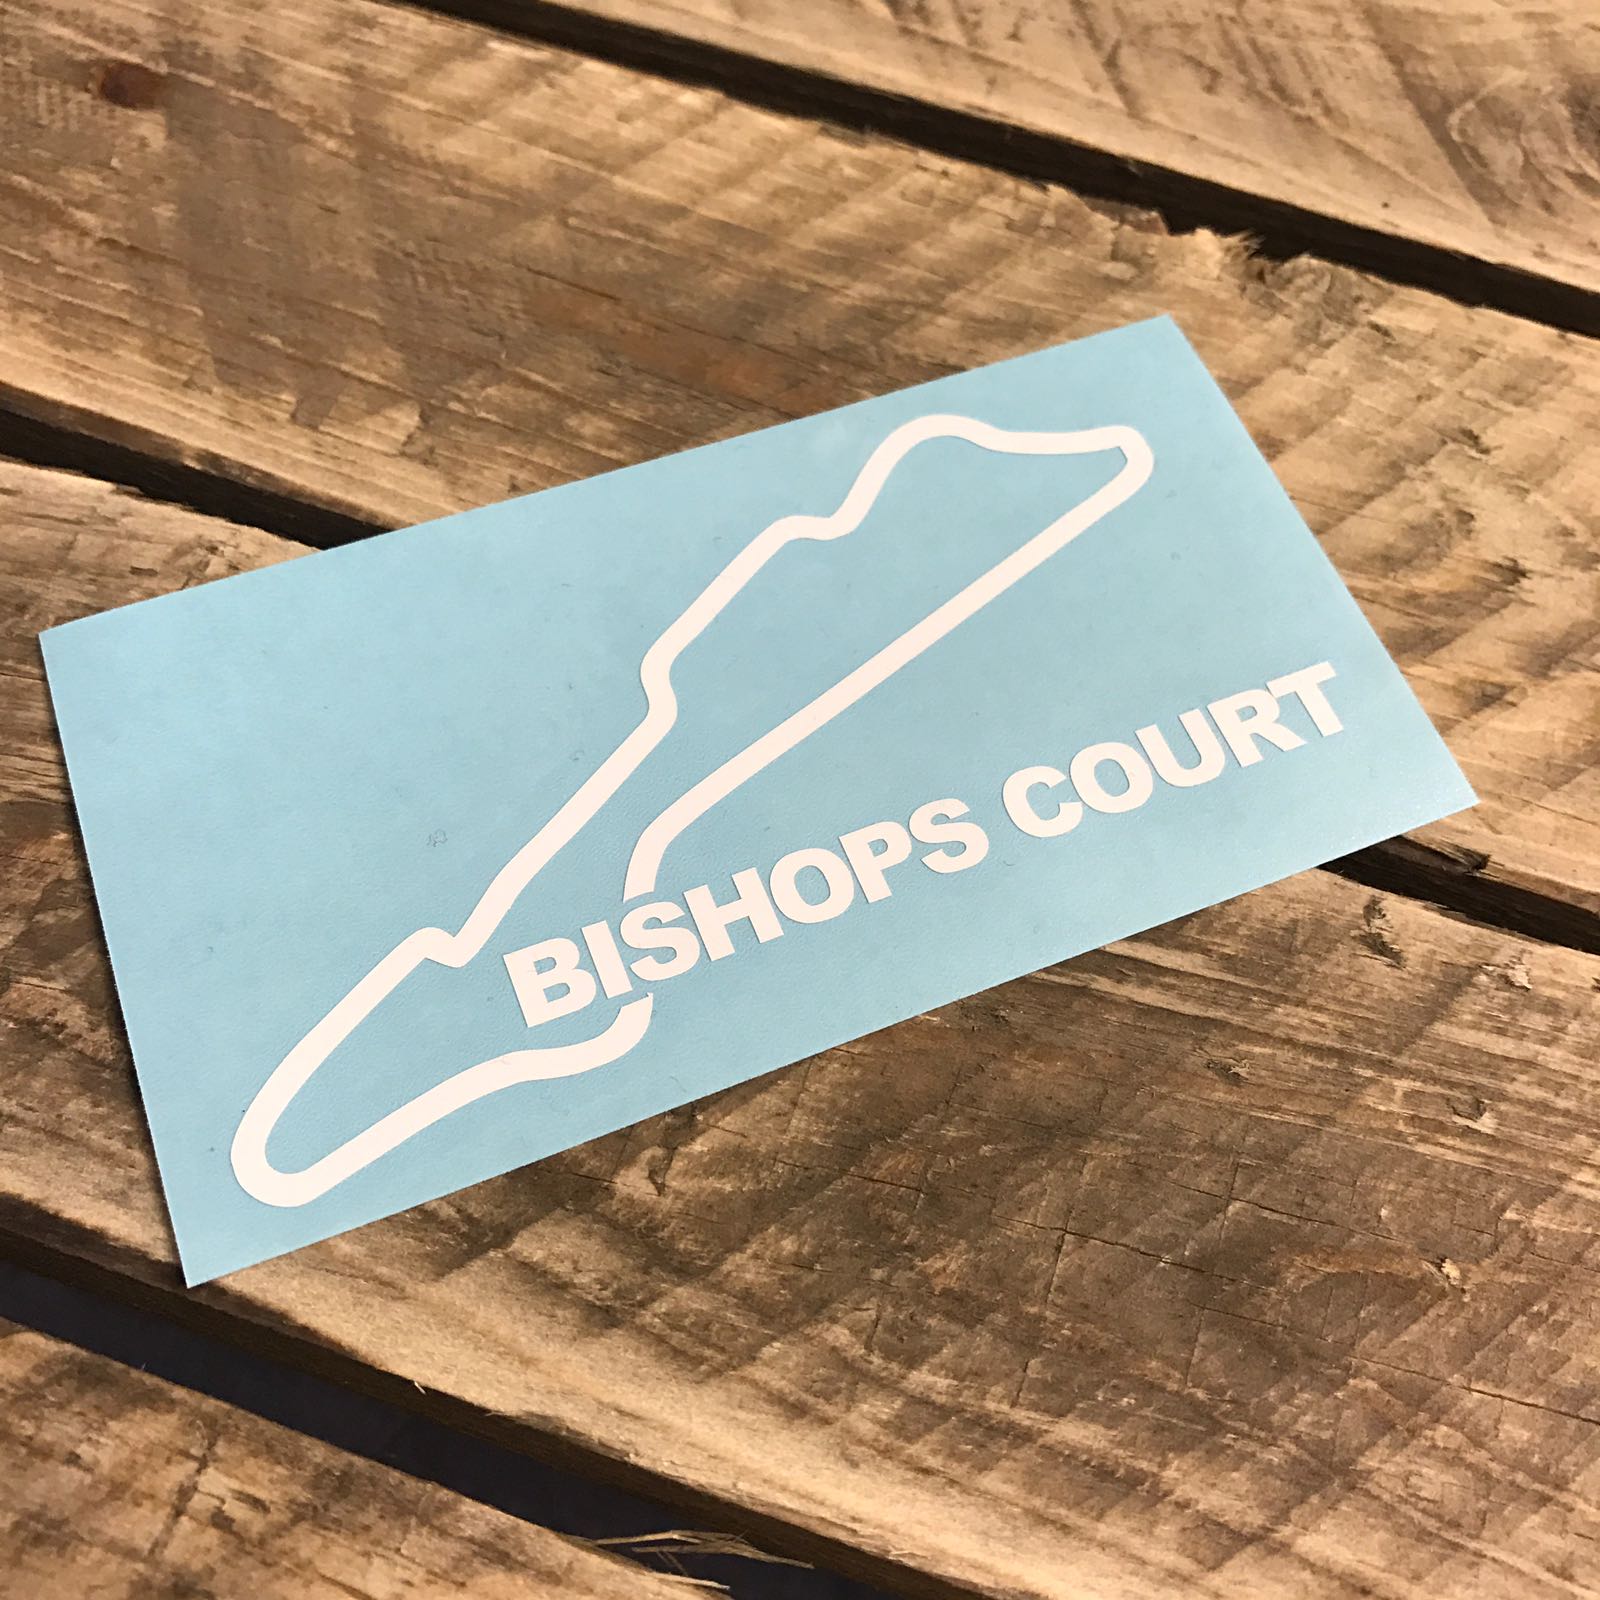 Bishopscourt